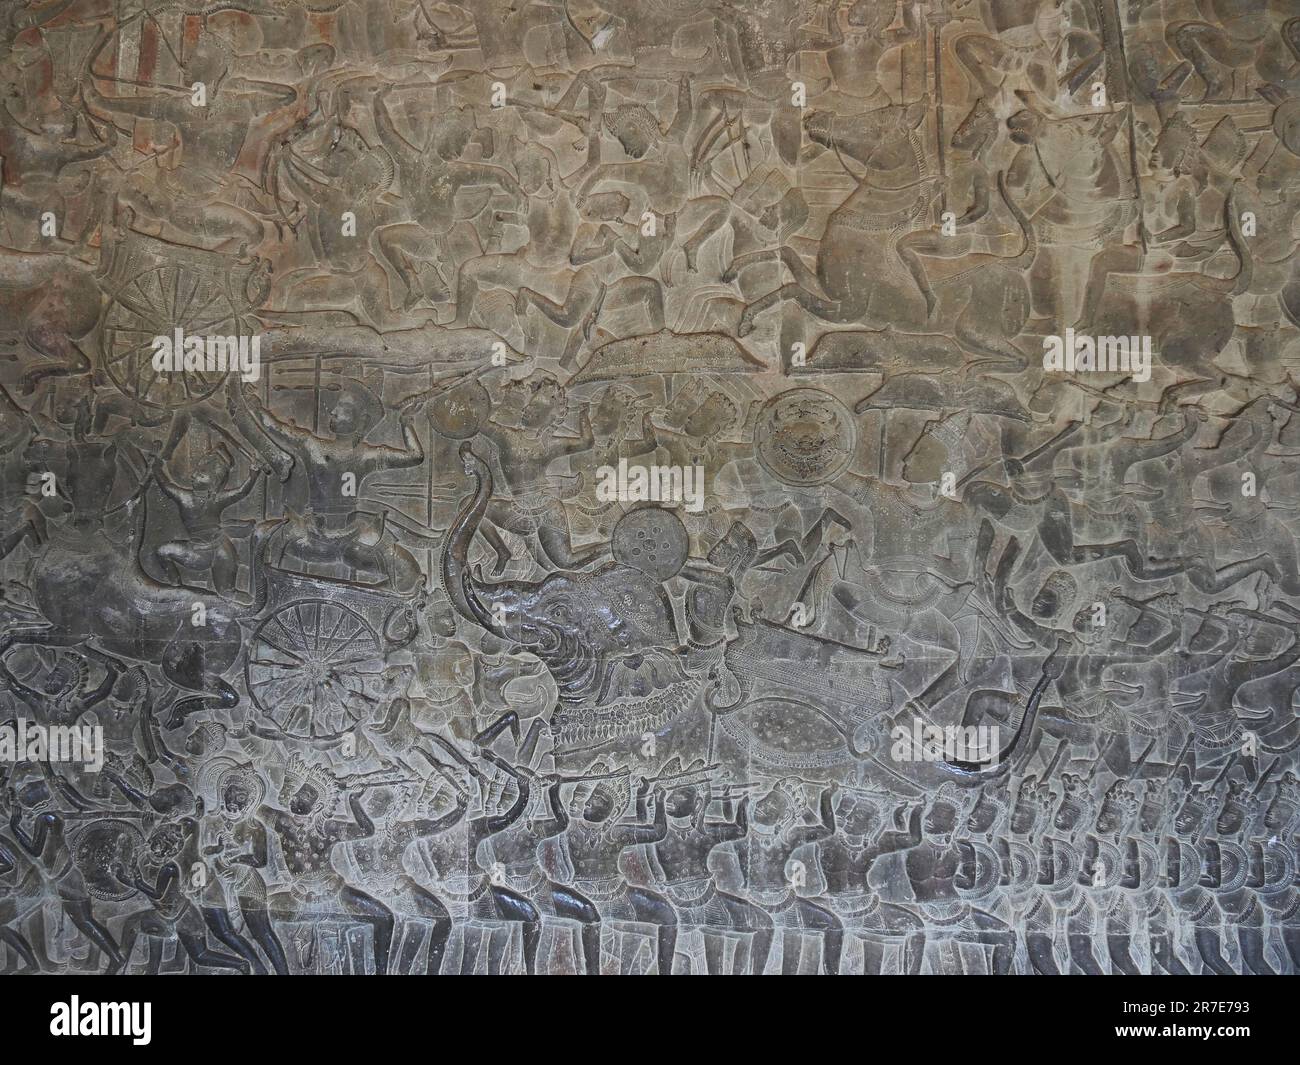 Il Tempio di Angkor Wat, la Provincia di Siem Reap, il complesso del Tempio di Angkor, patrimonio mondiale dell'UNESCO nel 1192, costruito nel XII secolo, in Cambogia Foto Stock